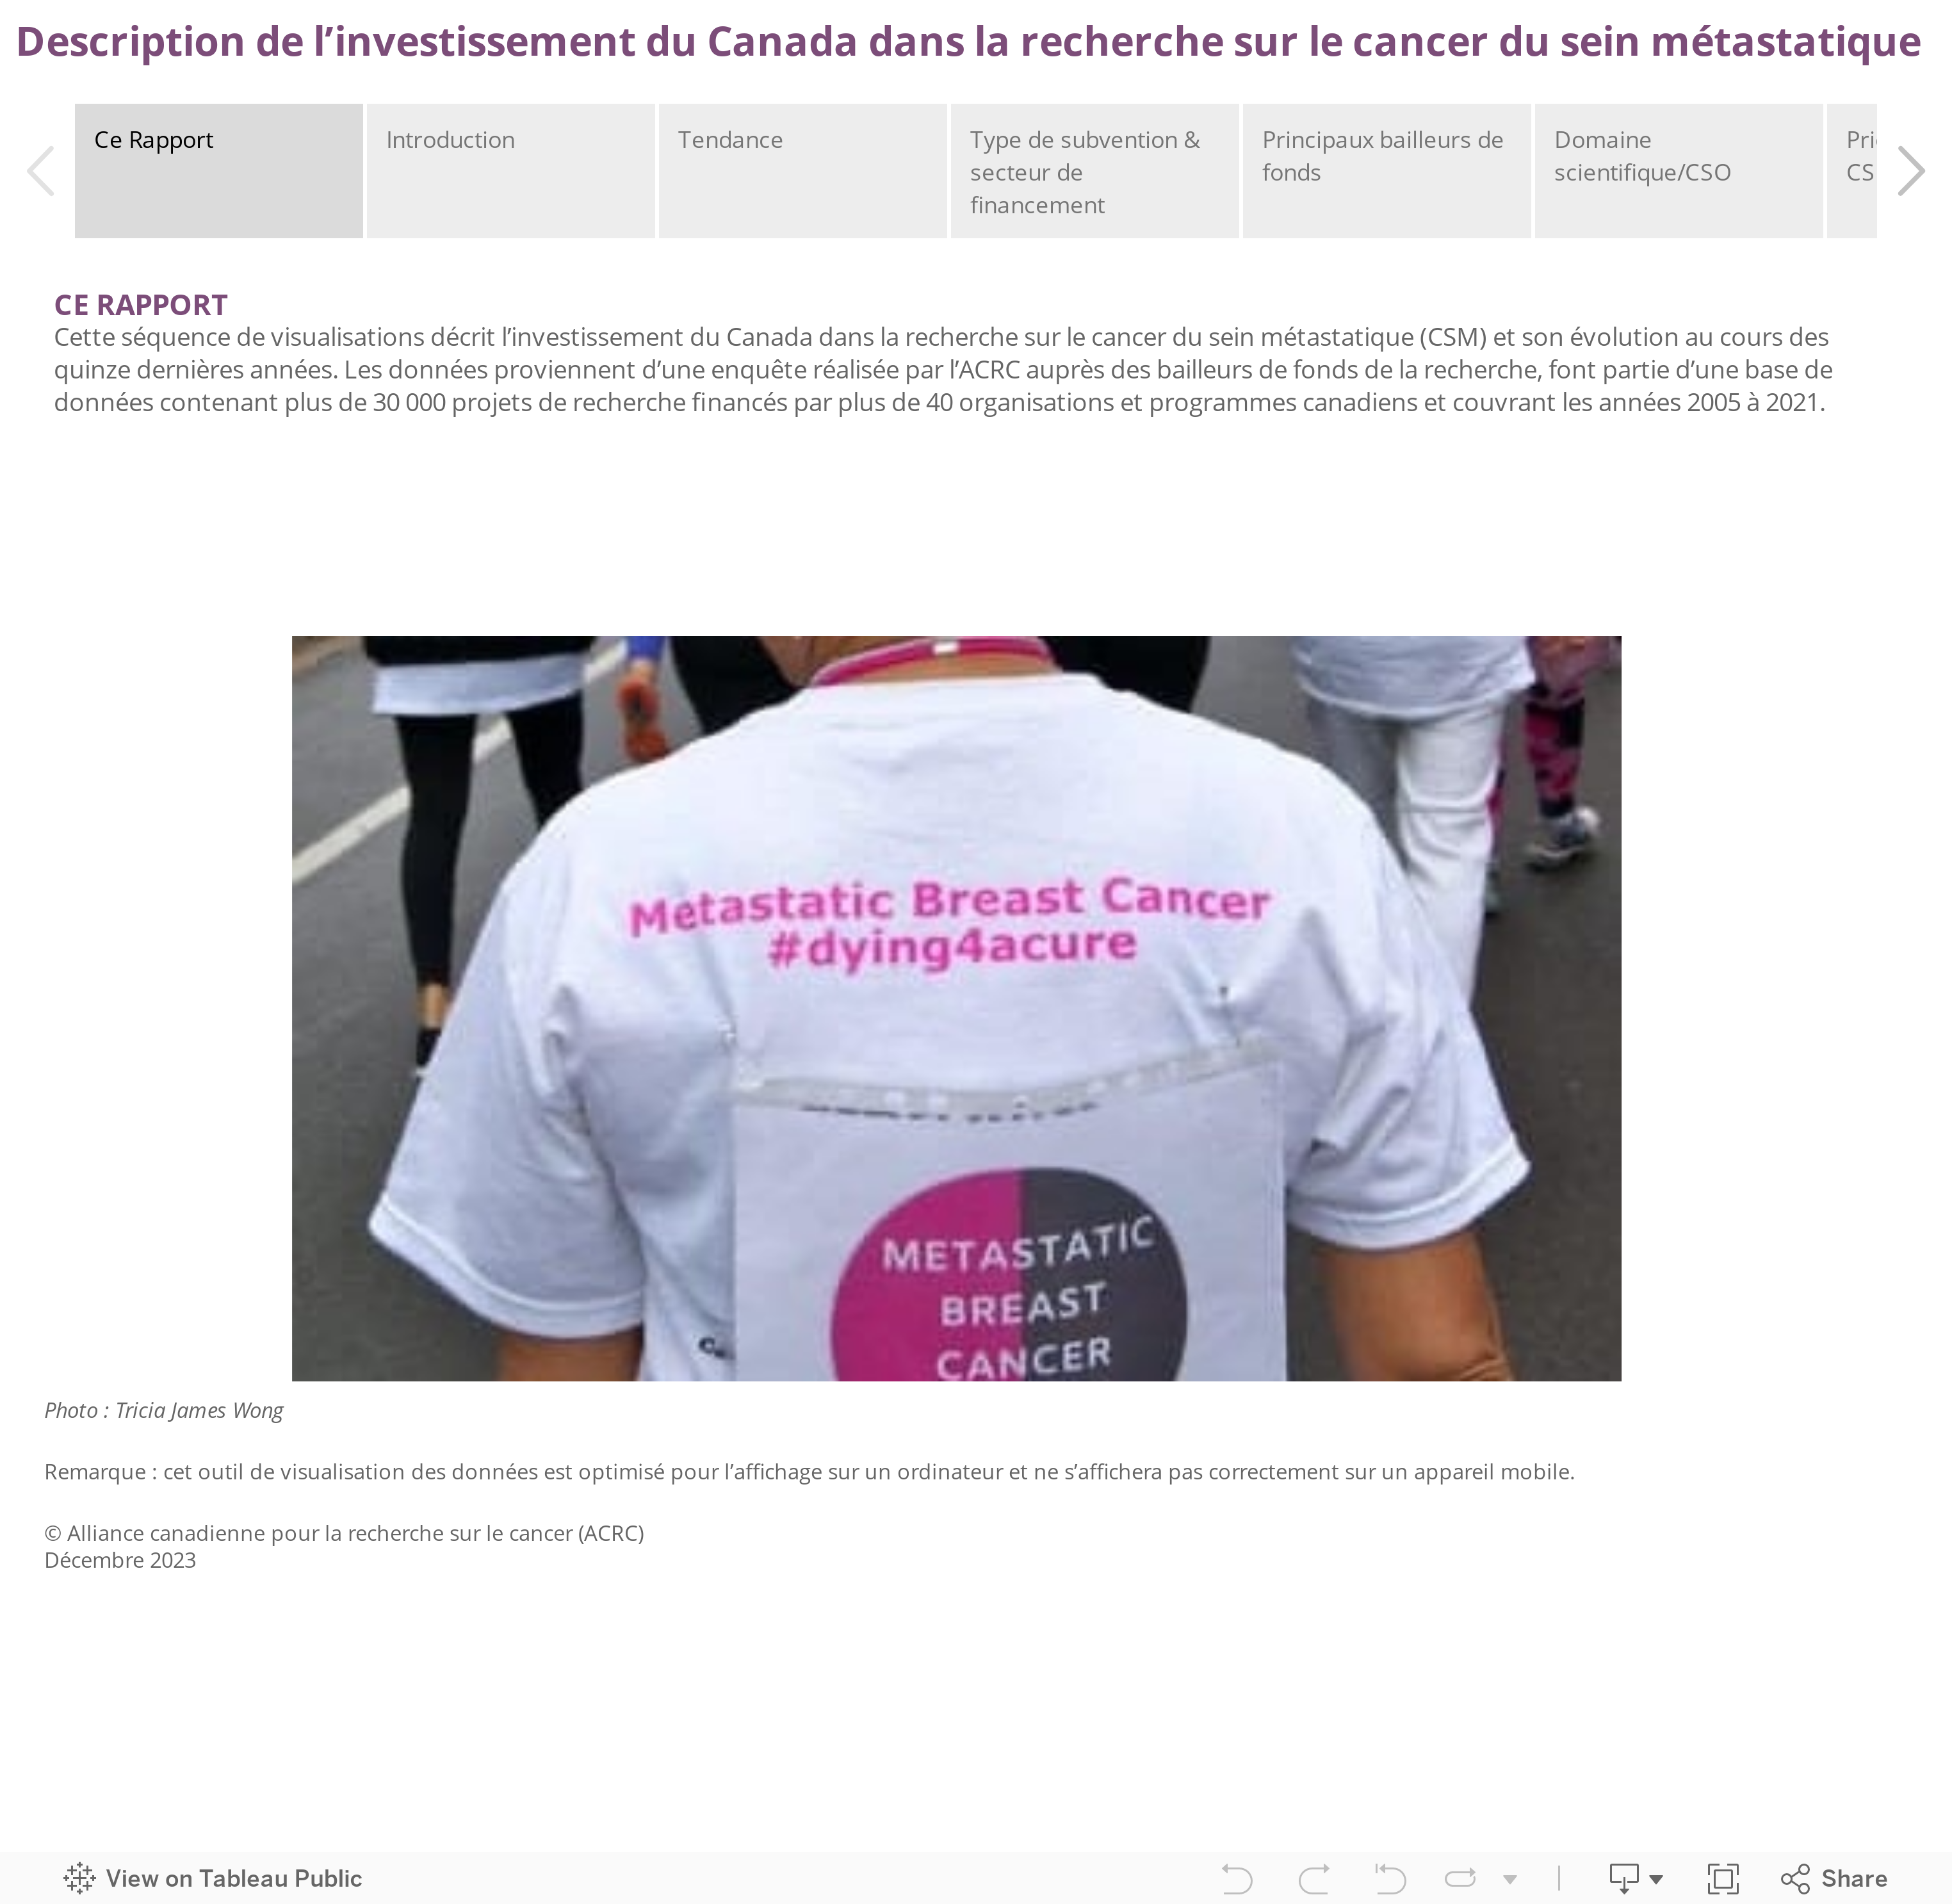 Description de l’investissement du Canada dans la recherche sur le cancer du sein métastatique  